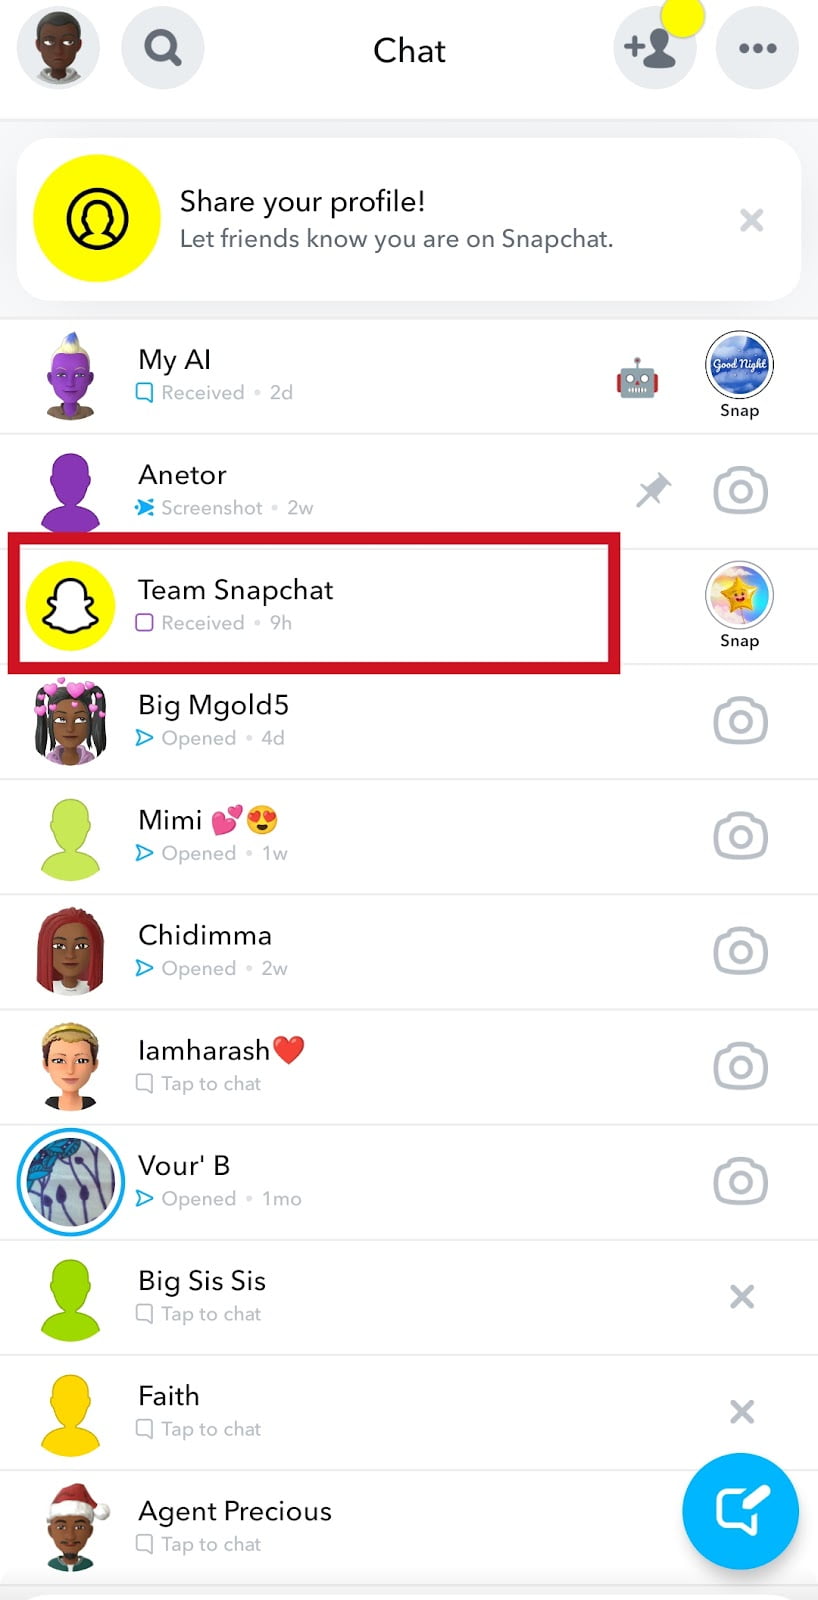 Team Snapchat via app